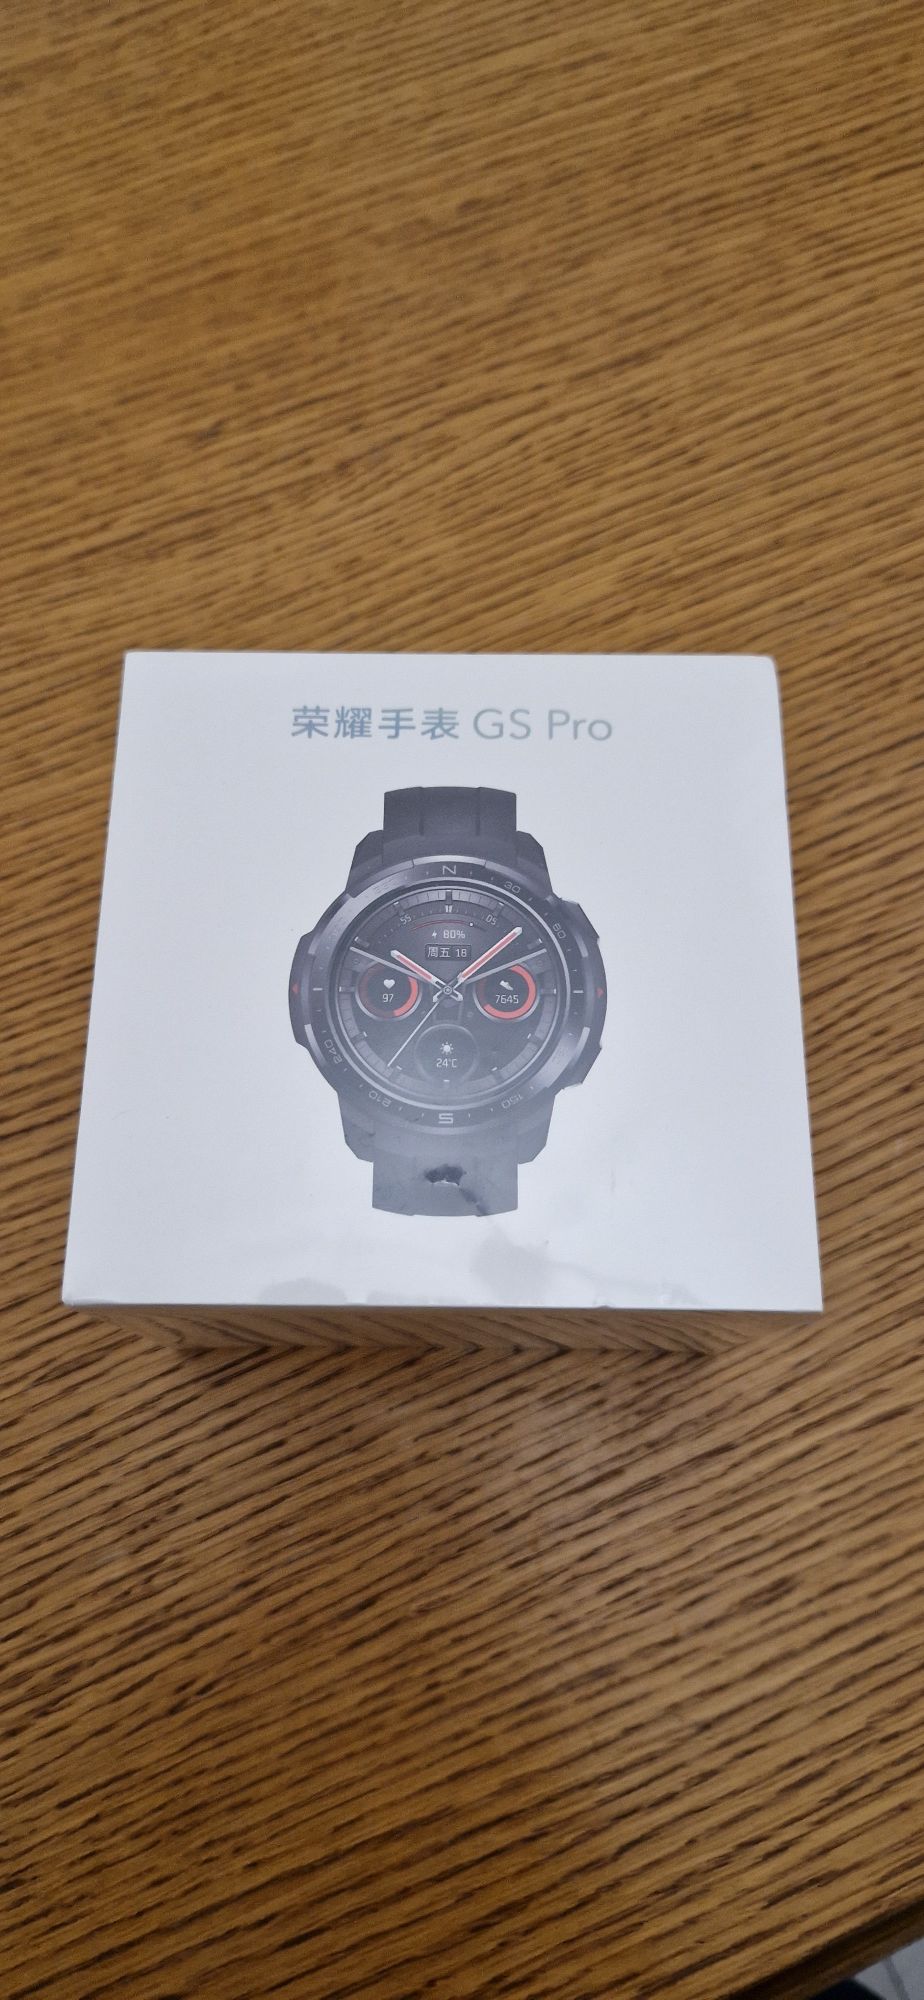 Смарт часы HONOR smartwatch GS PRO оригинальные, новые